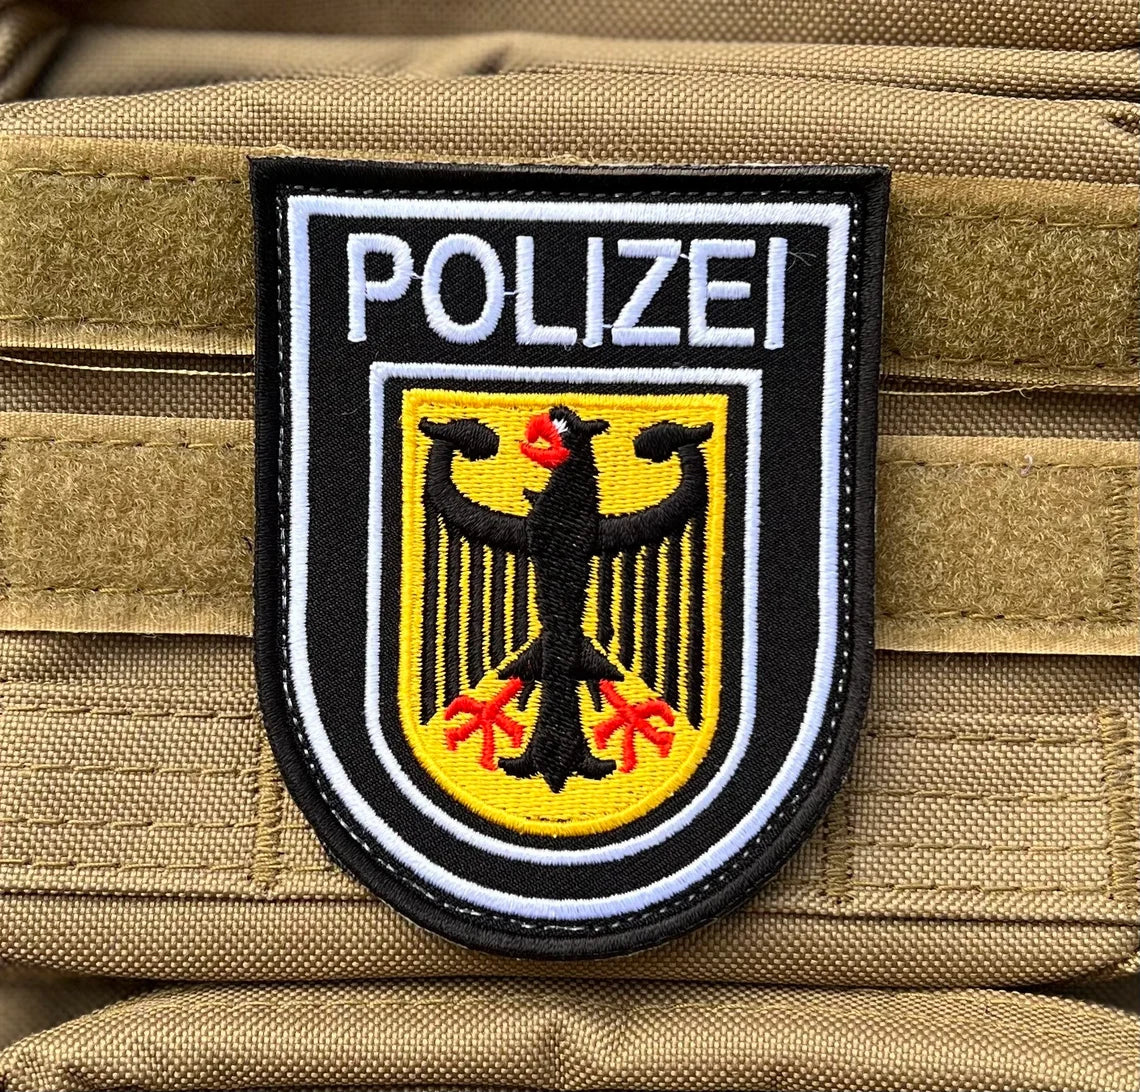 Polizei Deutschland Patch (3.65 Inch) Velcro German Police Badge –